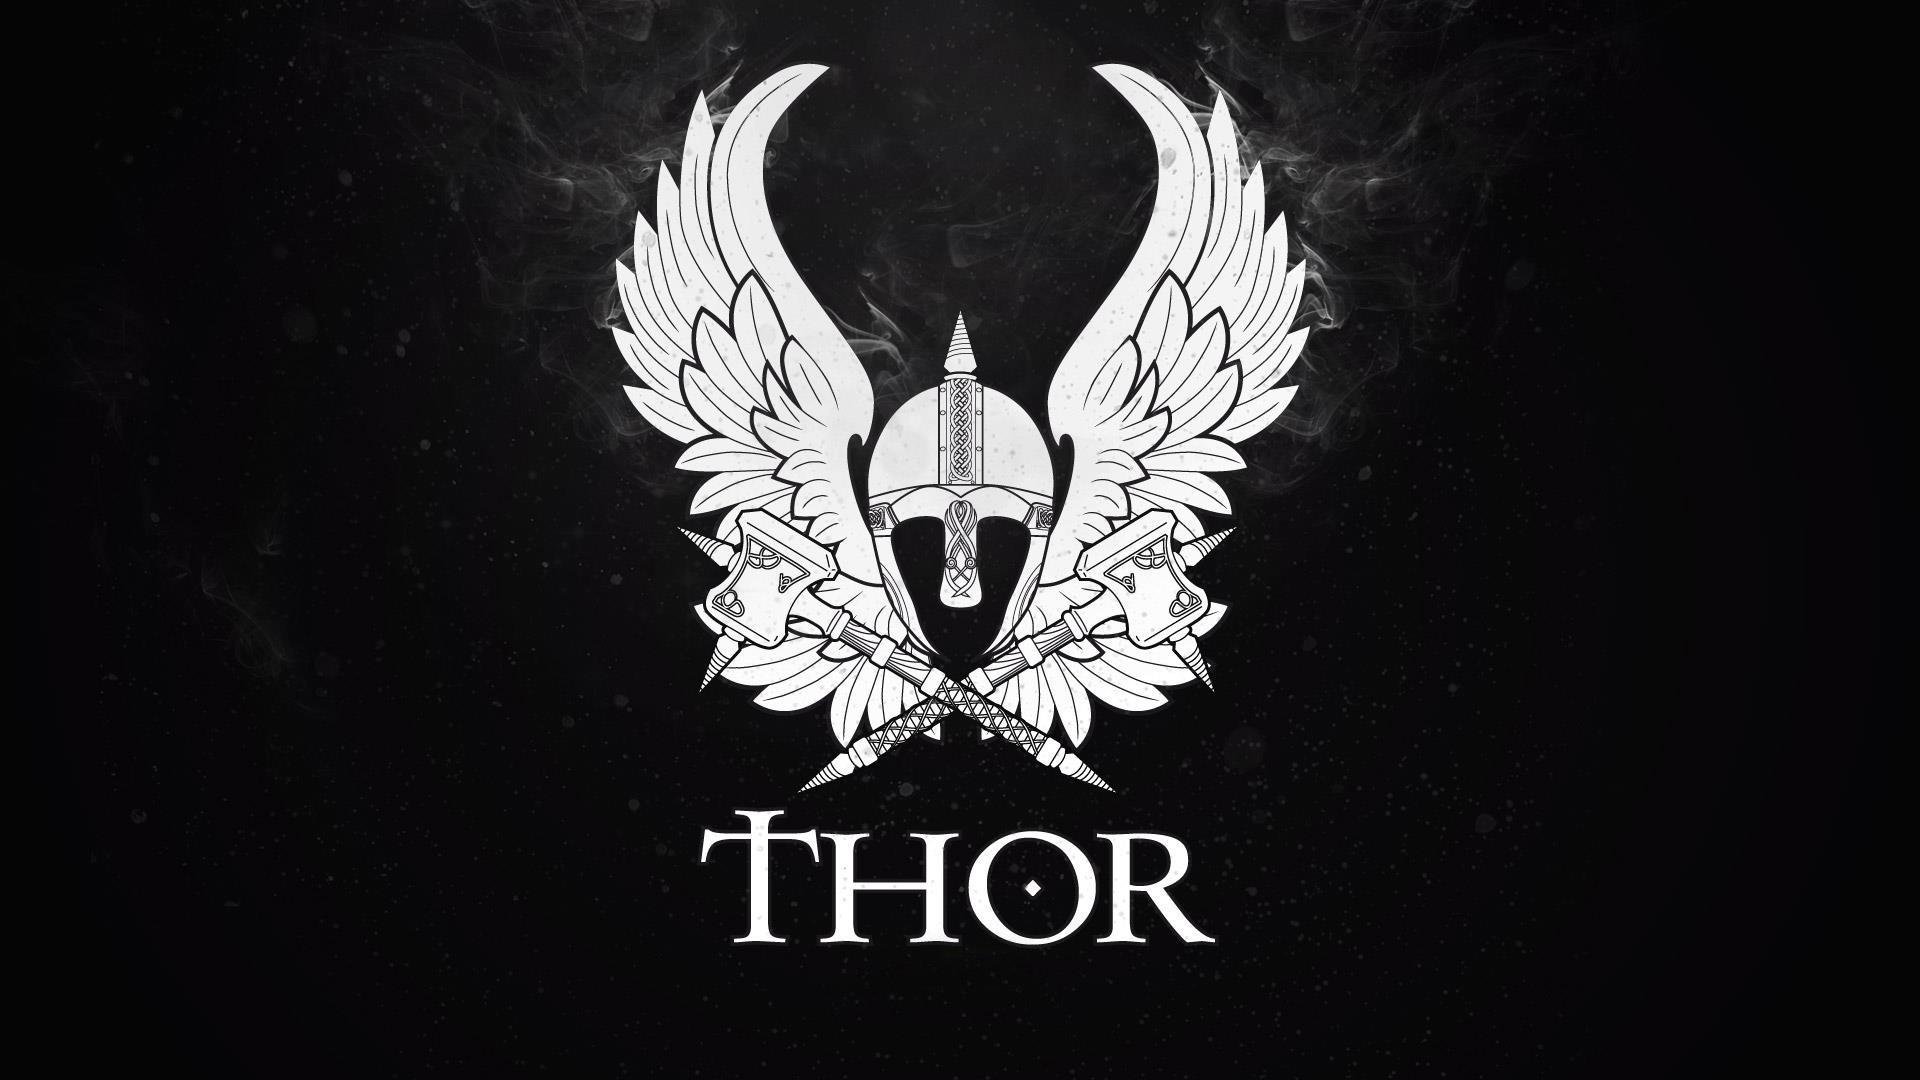 Thor's Hammer Wallpaper